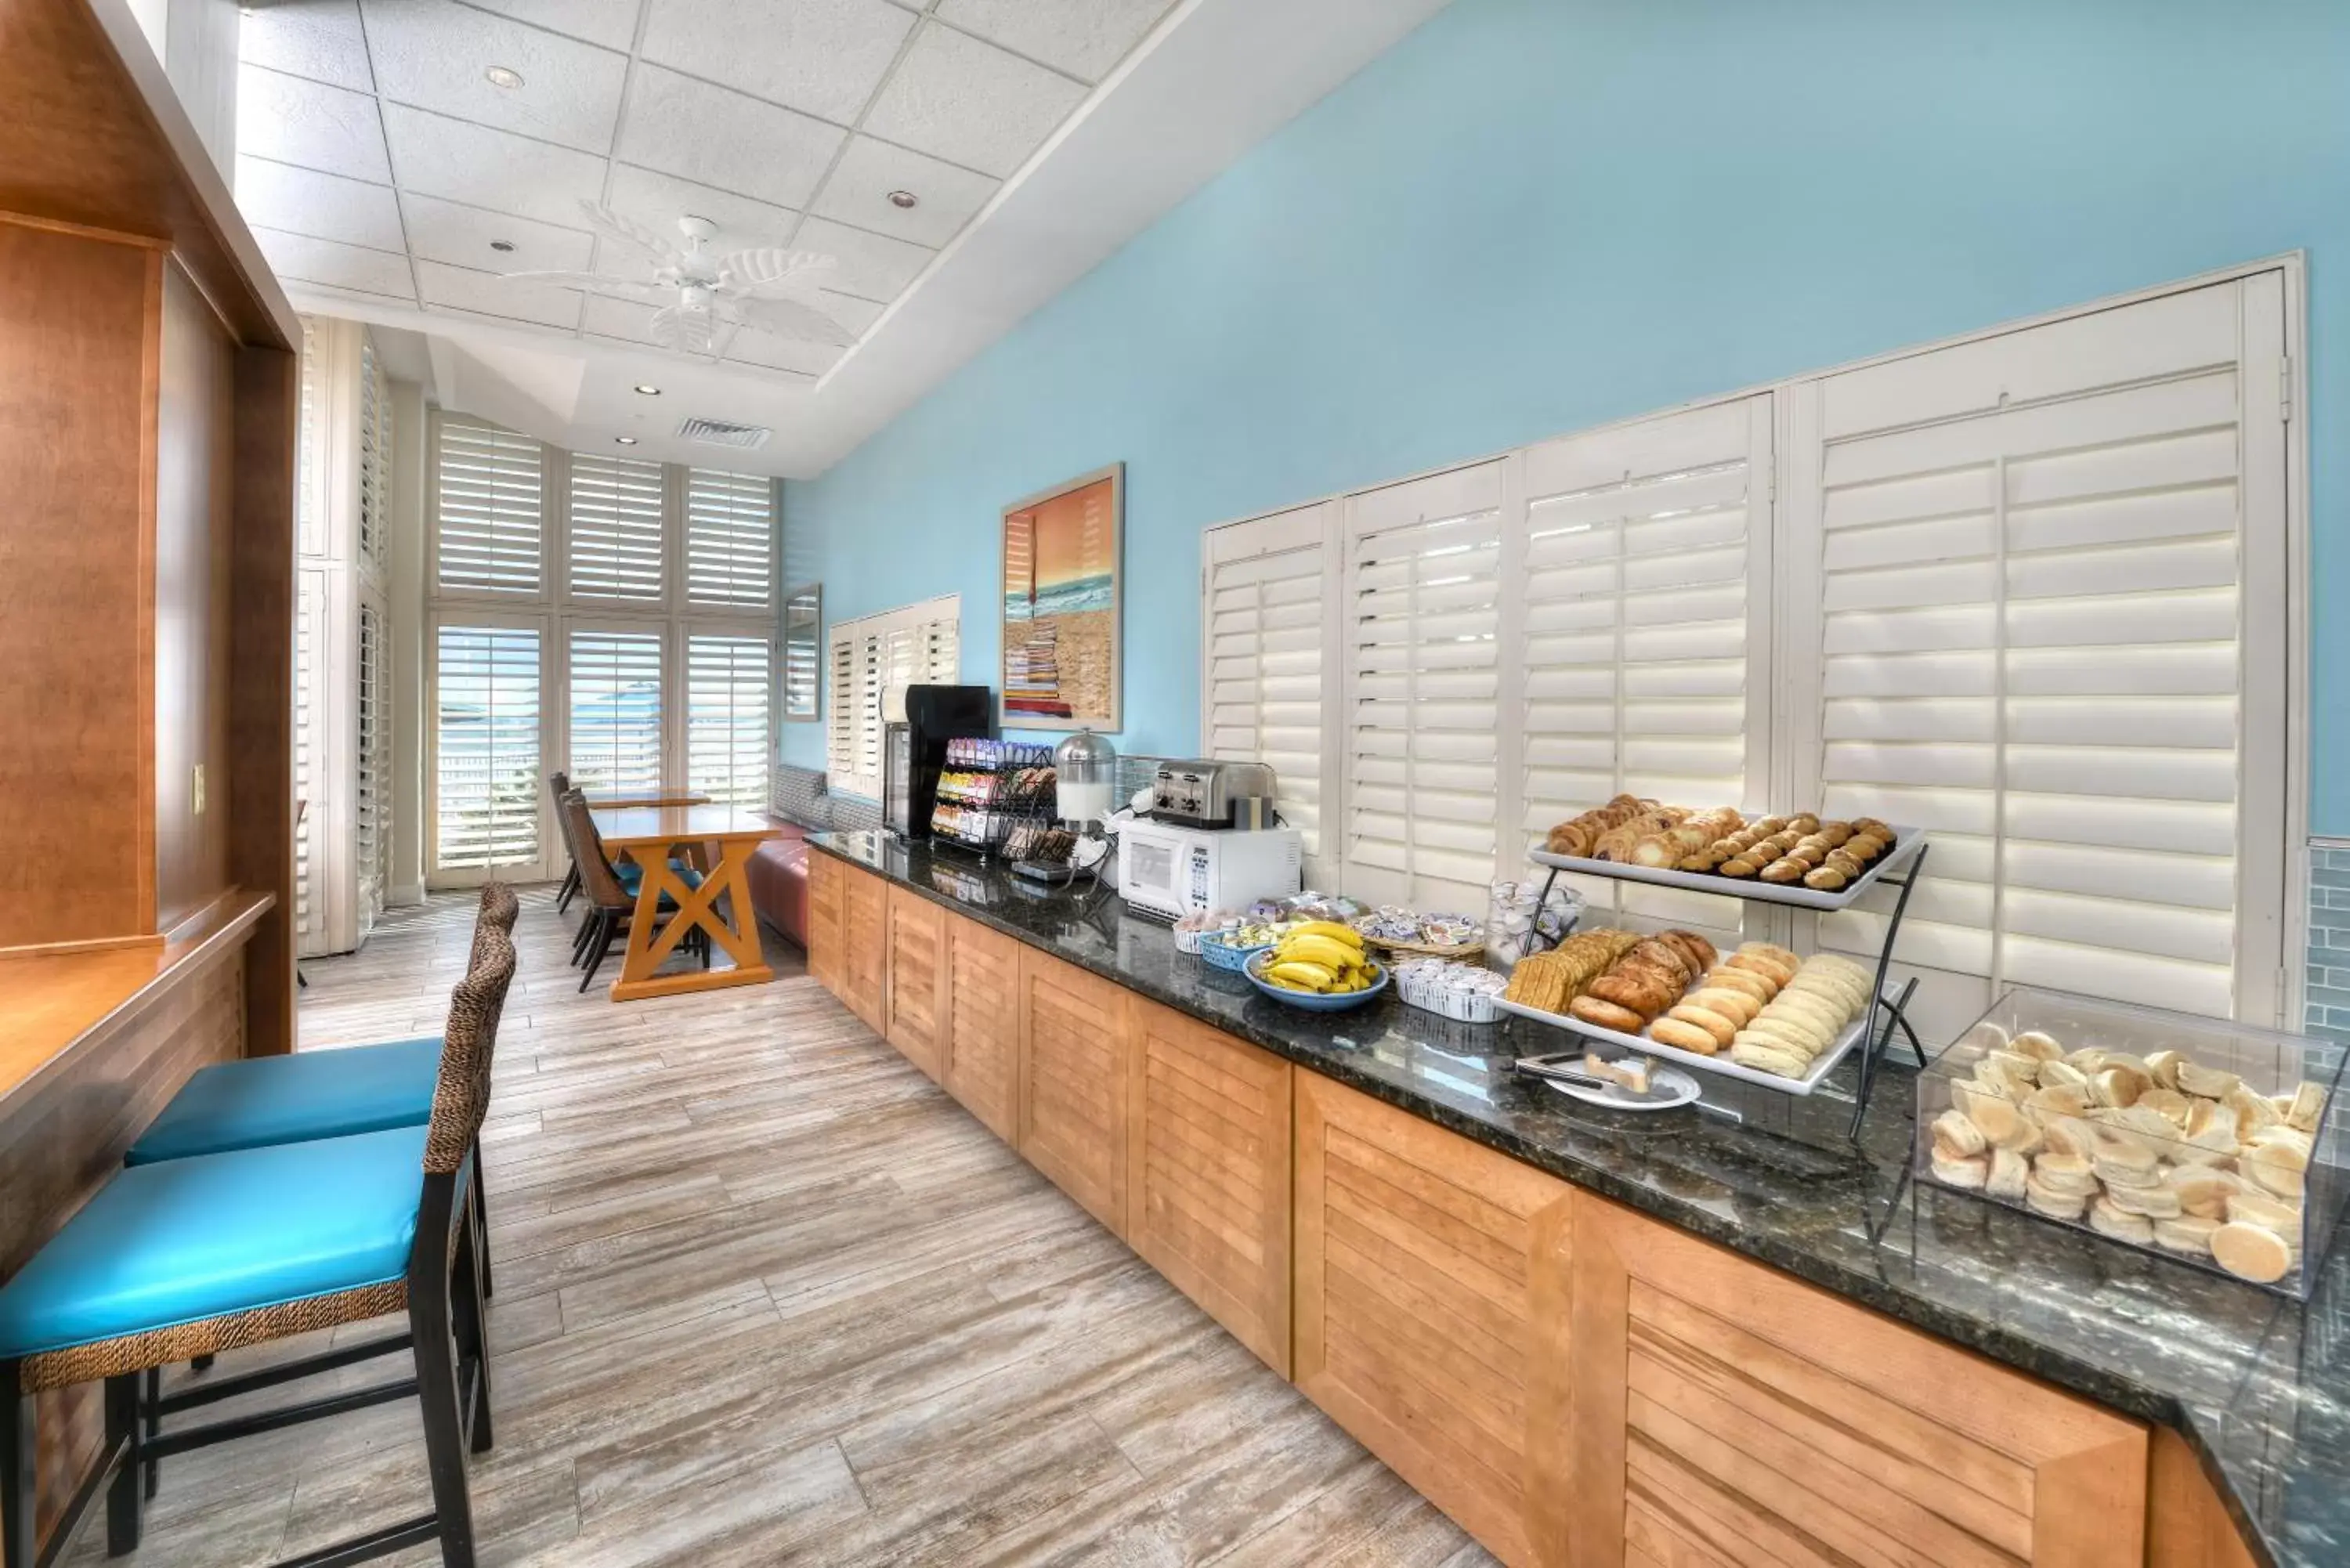 Continental breakfast in Bahama House - Daytona Beach Shores